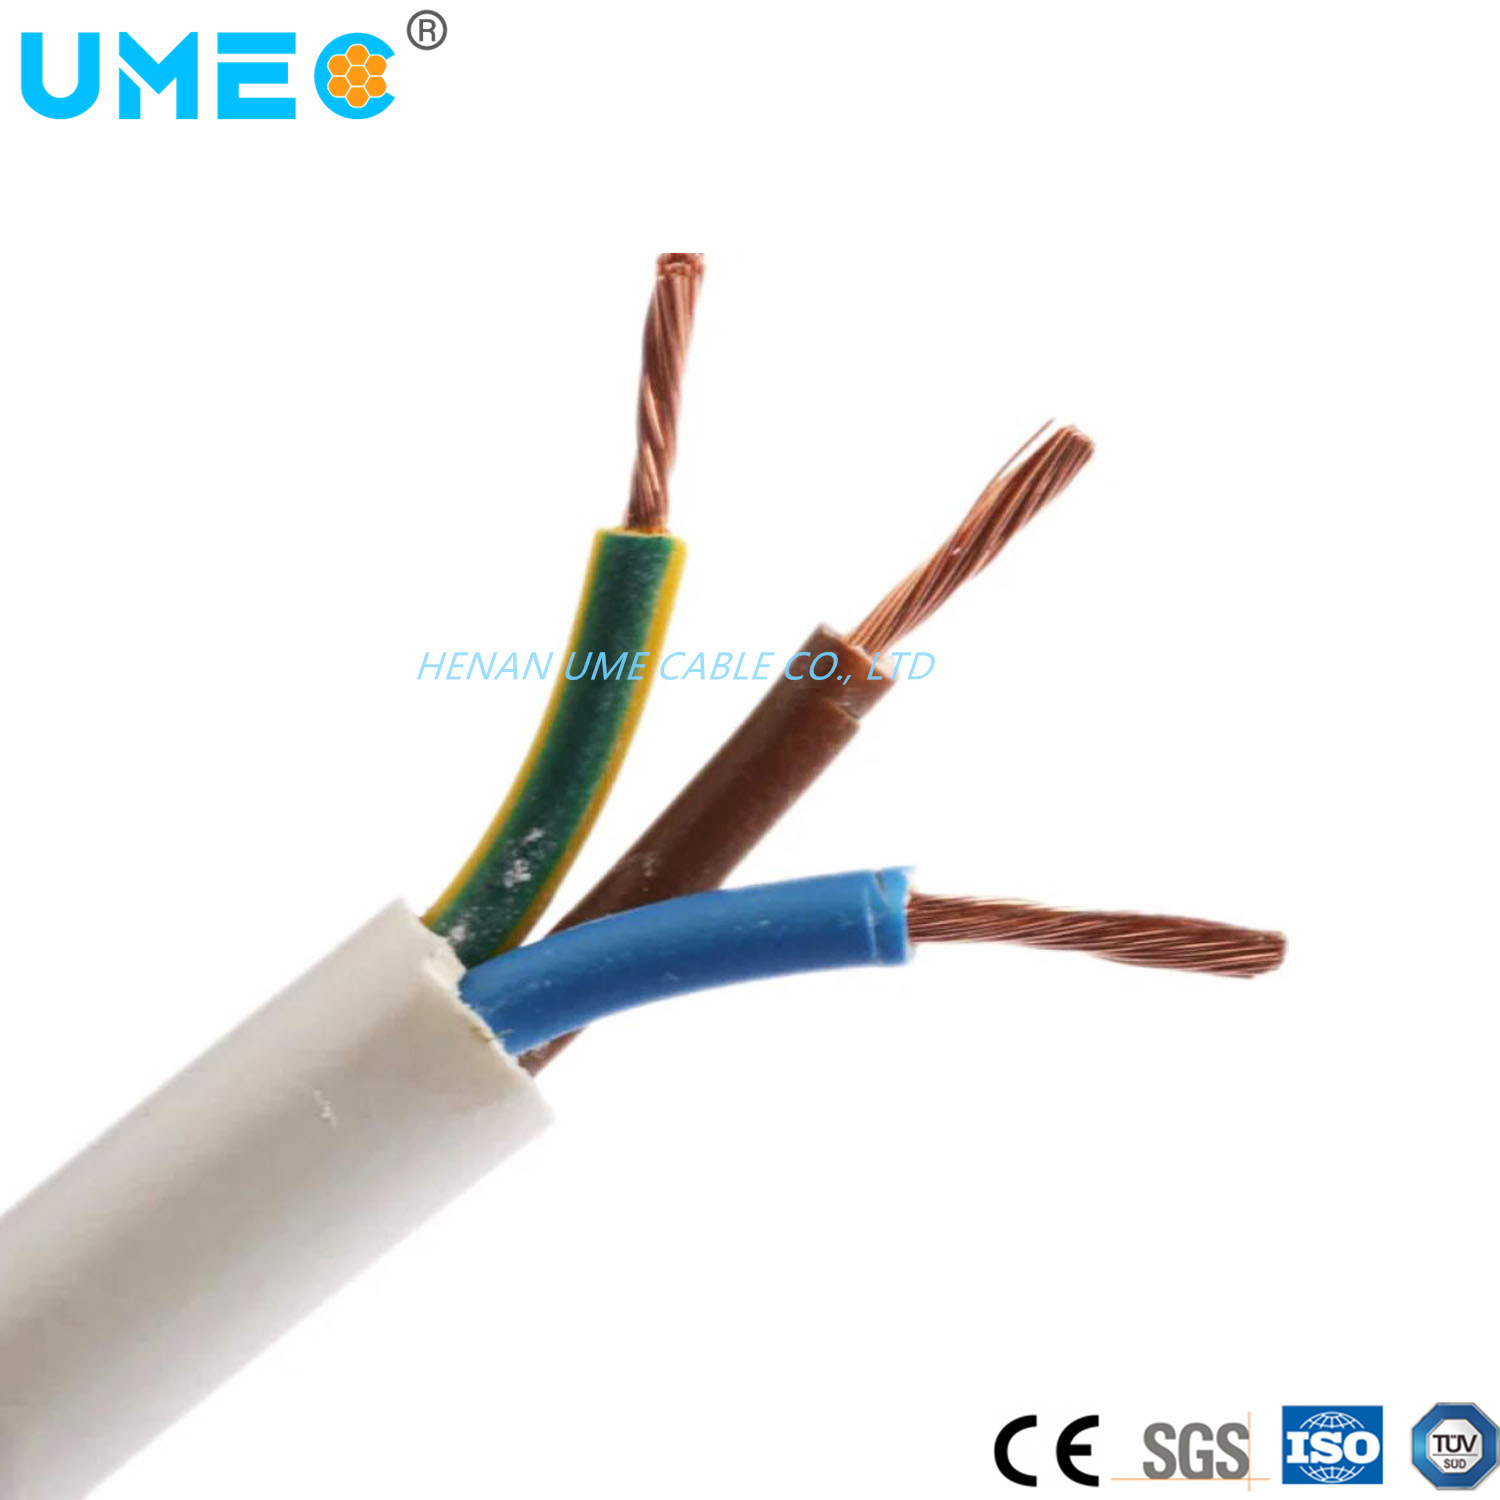 
                Owy 300/500V H05VV-F Cable conducteur de cuivre isolés de PVC thermoplastique câble gaine 3gx2.5mm2 4gx2.5mm2
            